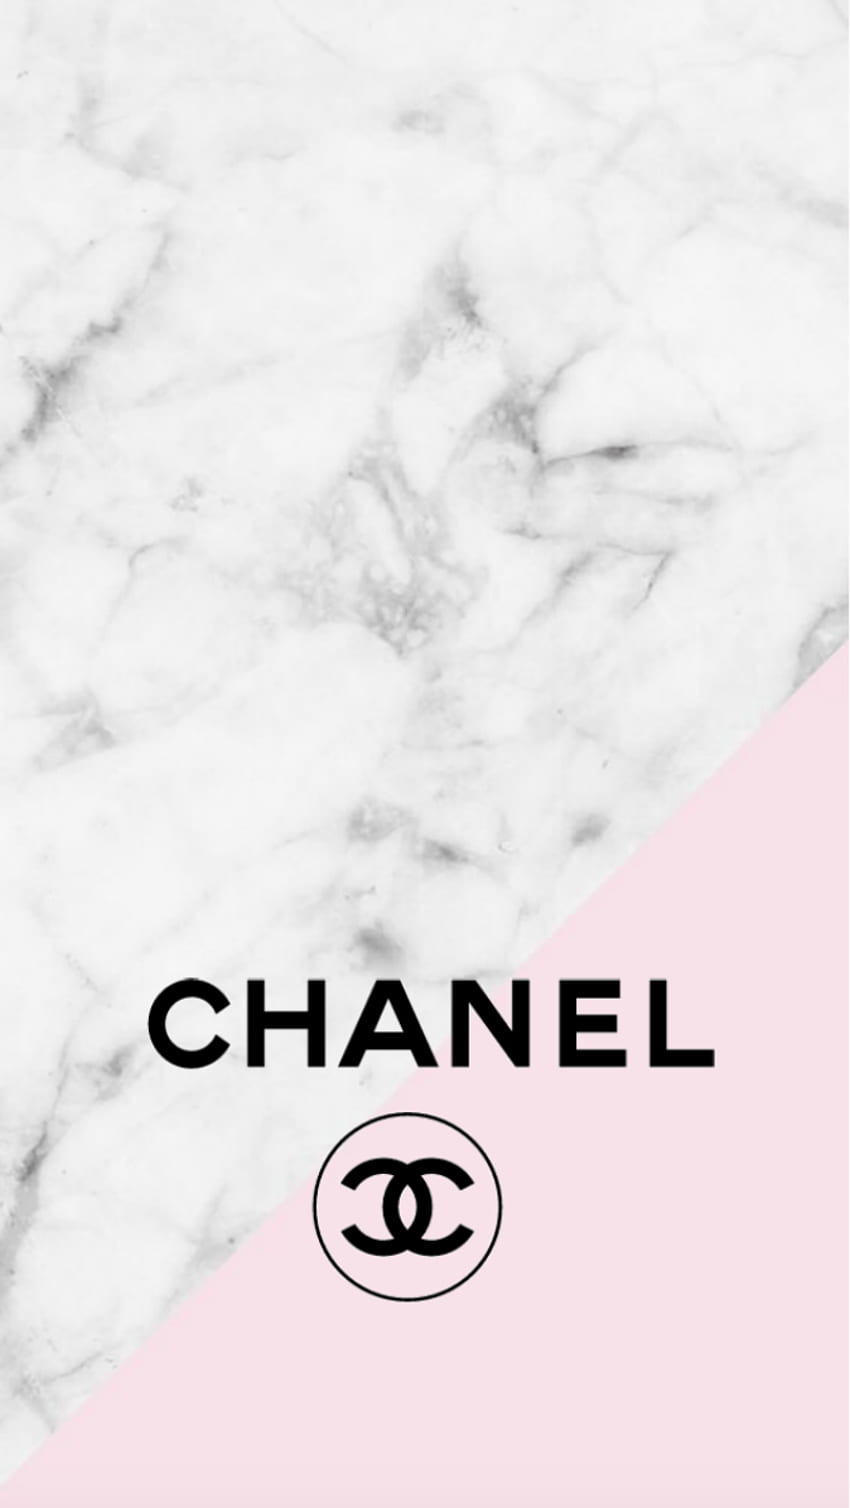 Top 500 Hình Ảnh Chanel Đẹp Nhất Miễn Phí Cho Bạn Làm Hình Nền Background  Ảnh Đại Diện Tải Chanel Về Hoàn Toàn Miễn Phí Tại Zicxa Photos